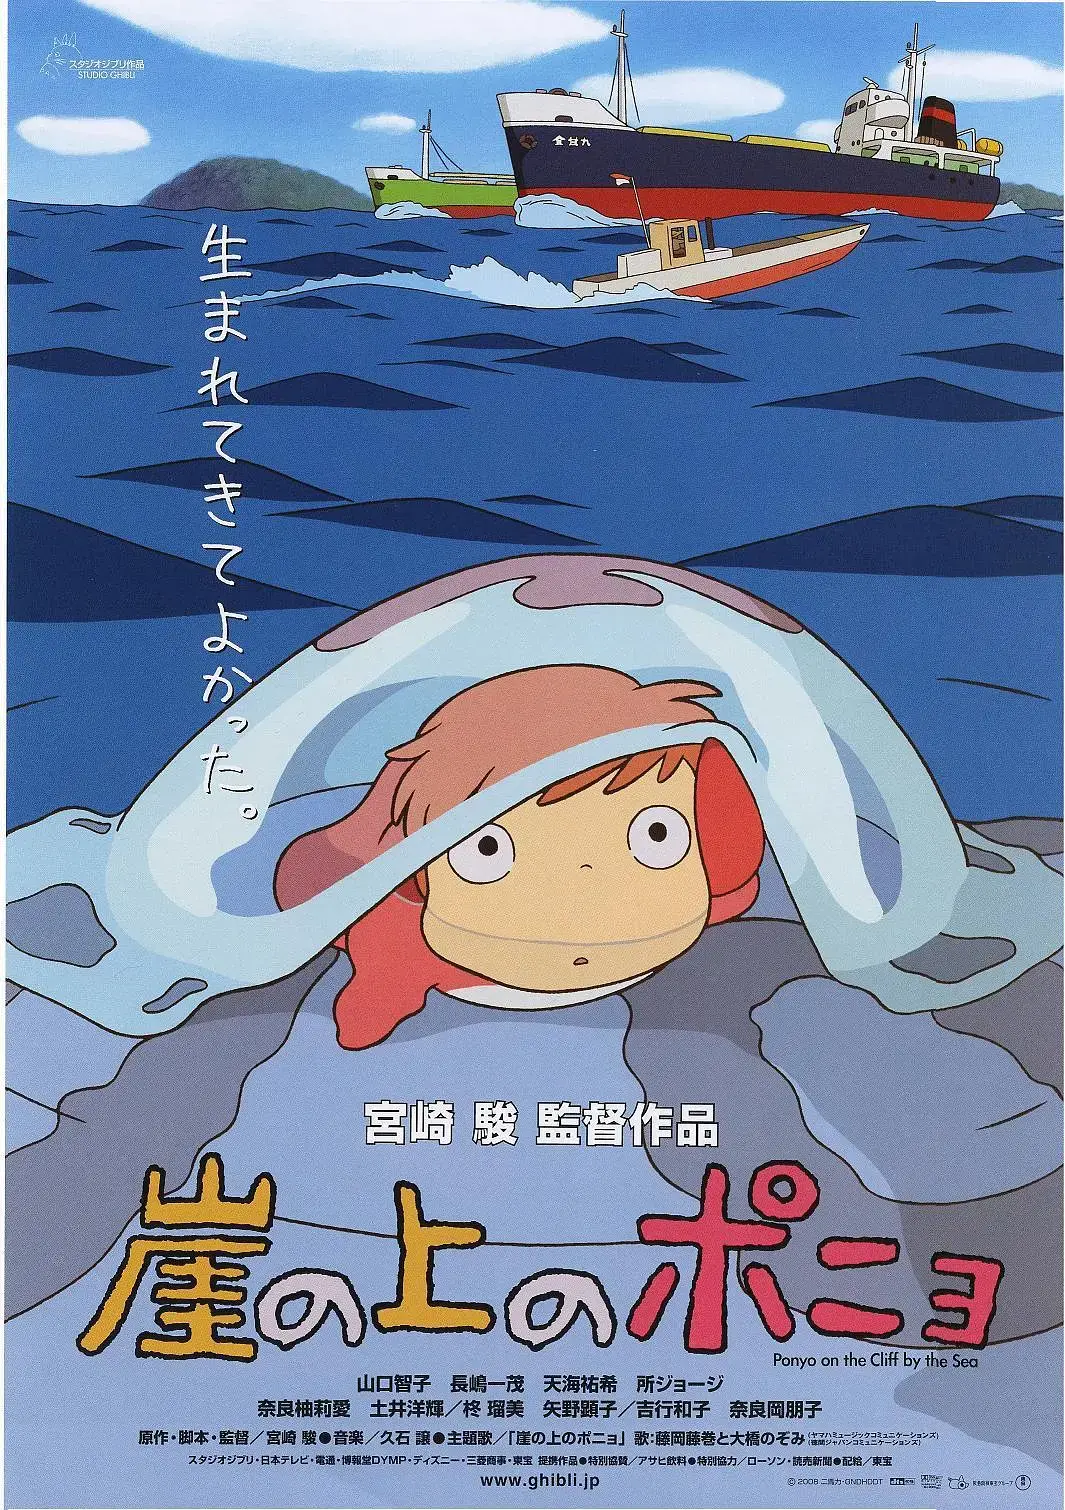 《悬崖上的金鱼姬》：解读宫崎骏导演的动画电影美学特点及风格